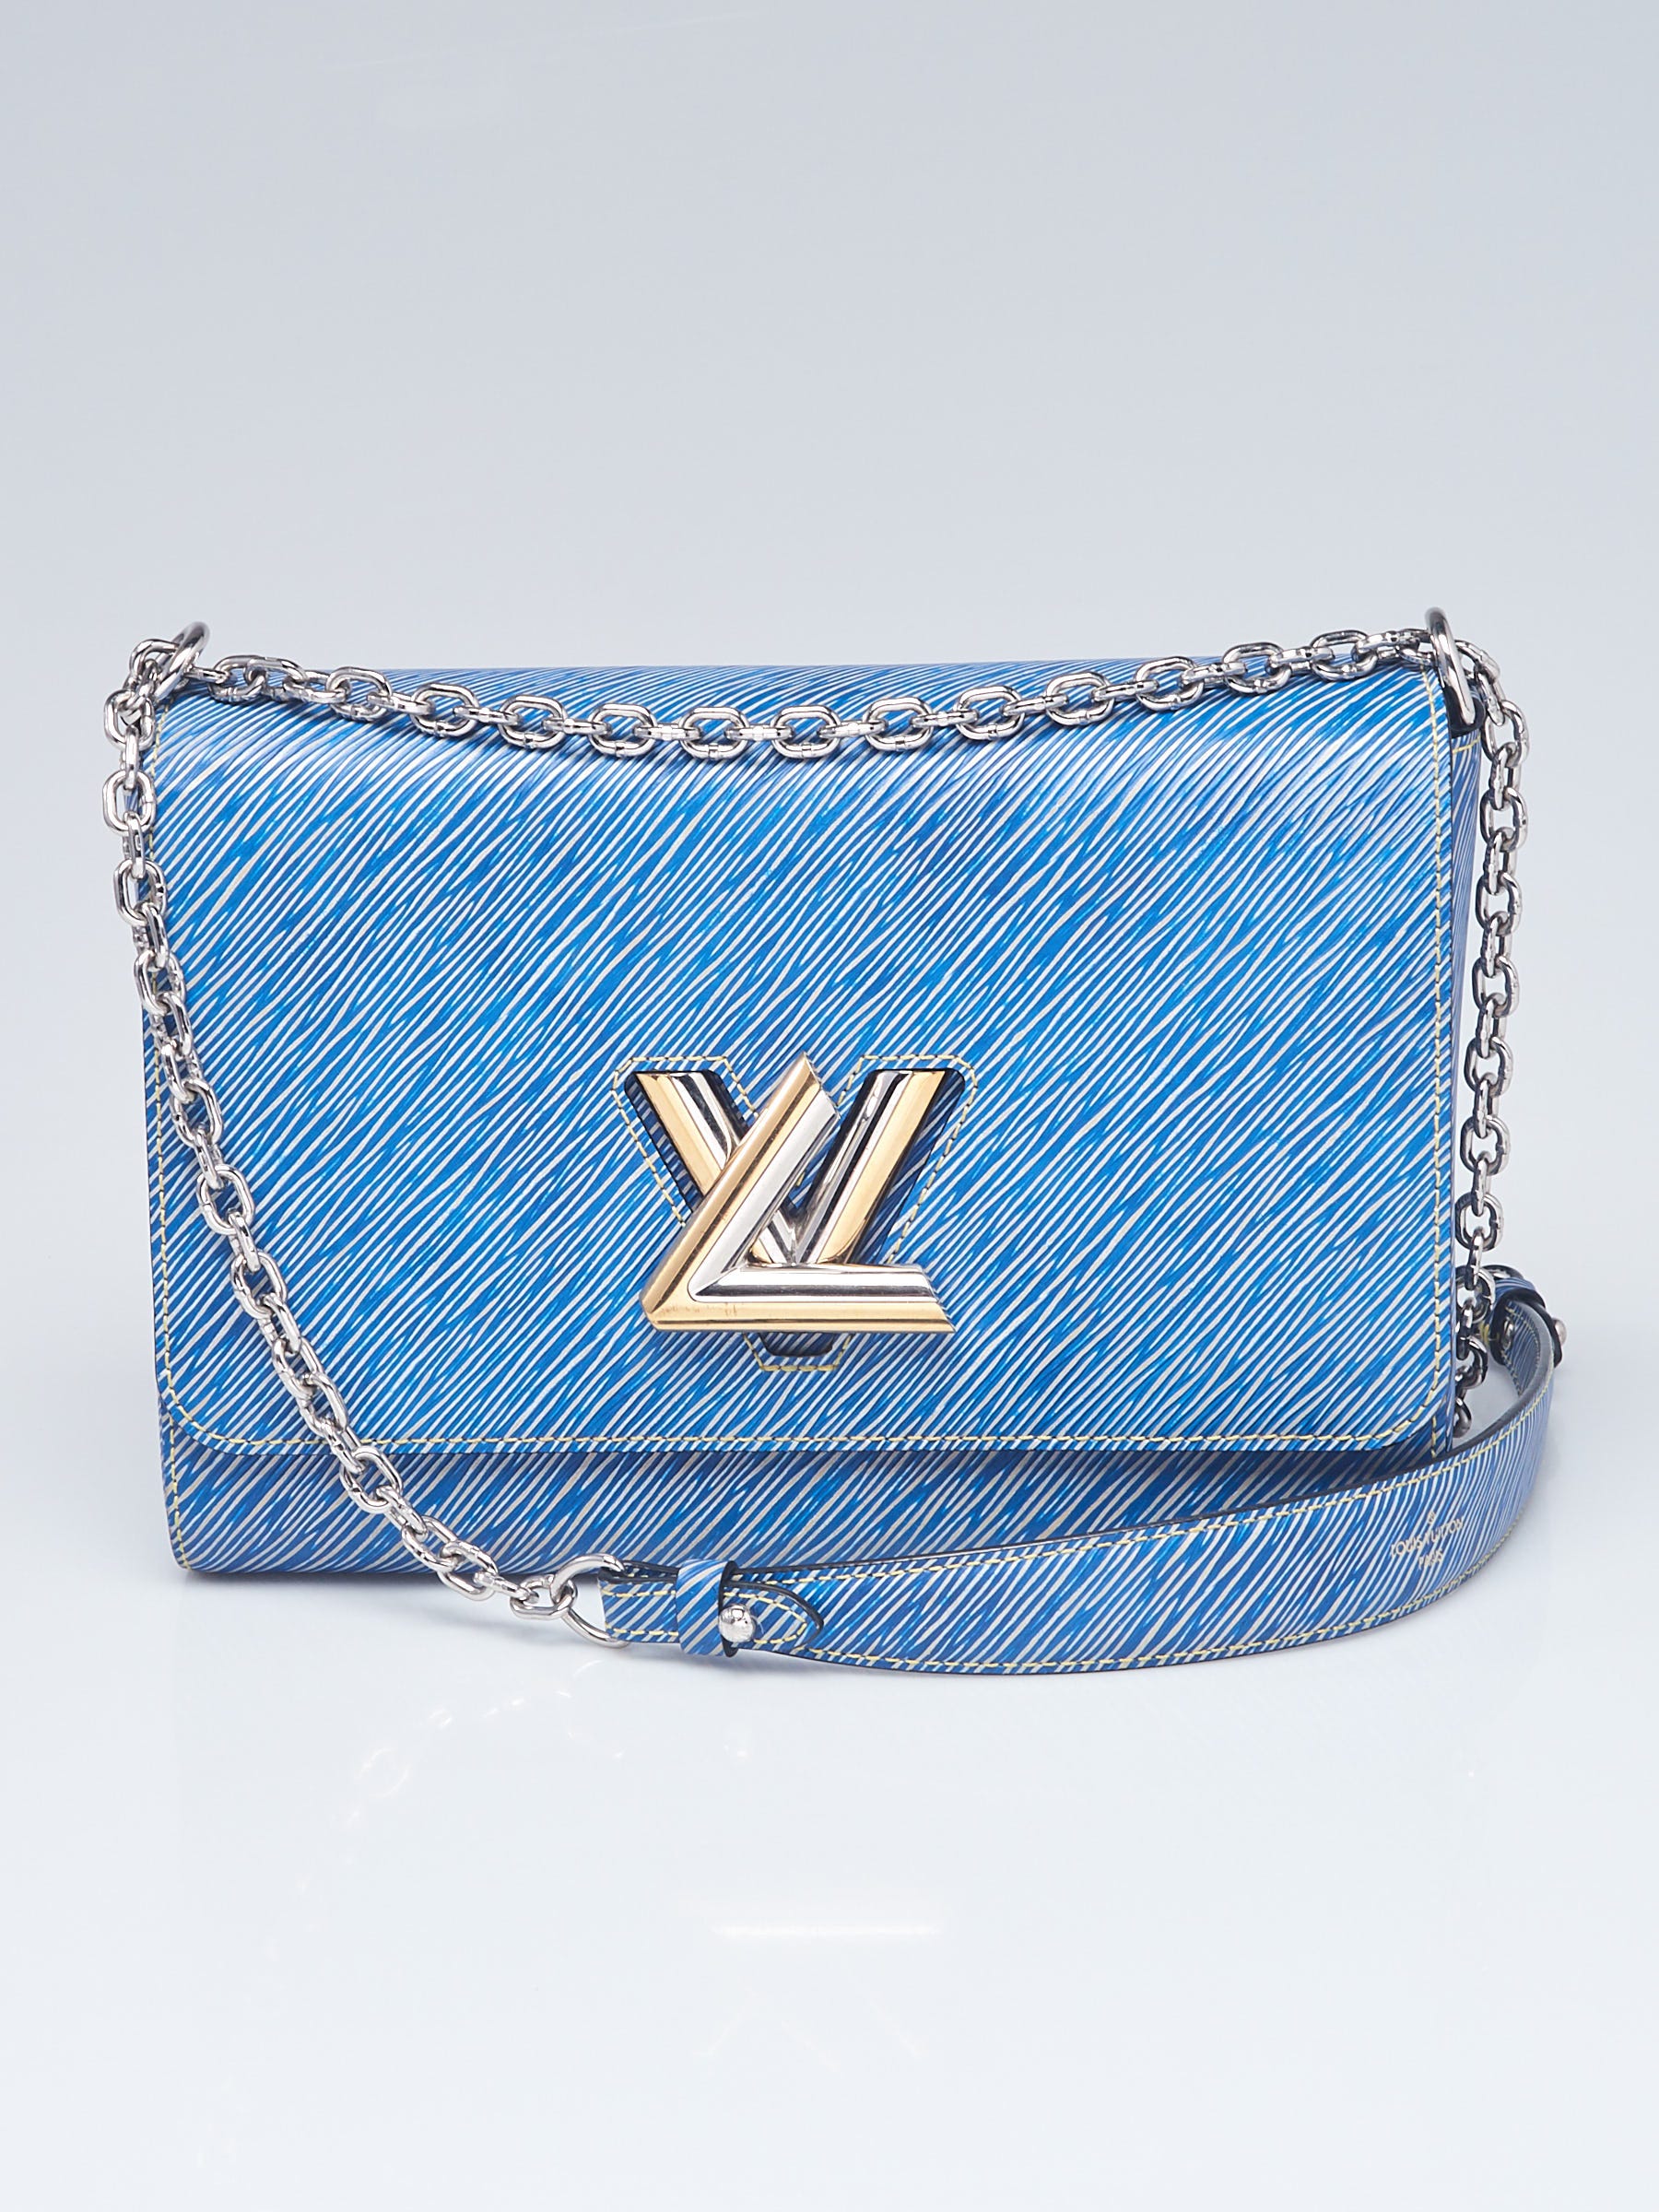 Louis Vuitton, Bags, Louis Vuitton Epi Wallet Blue